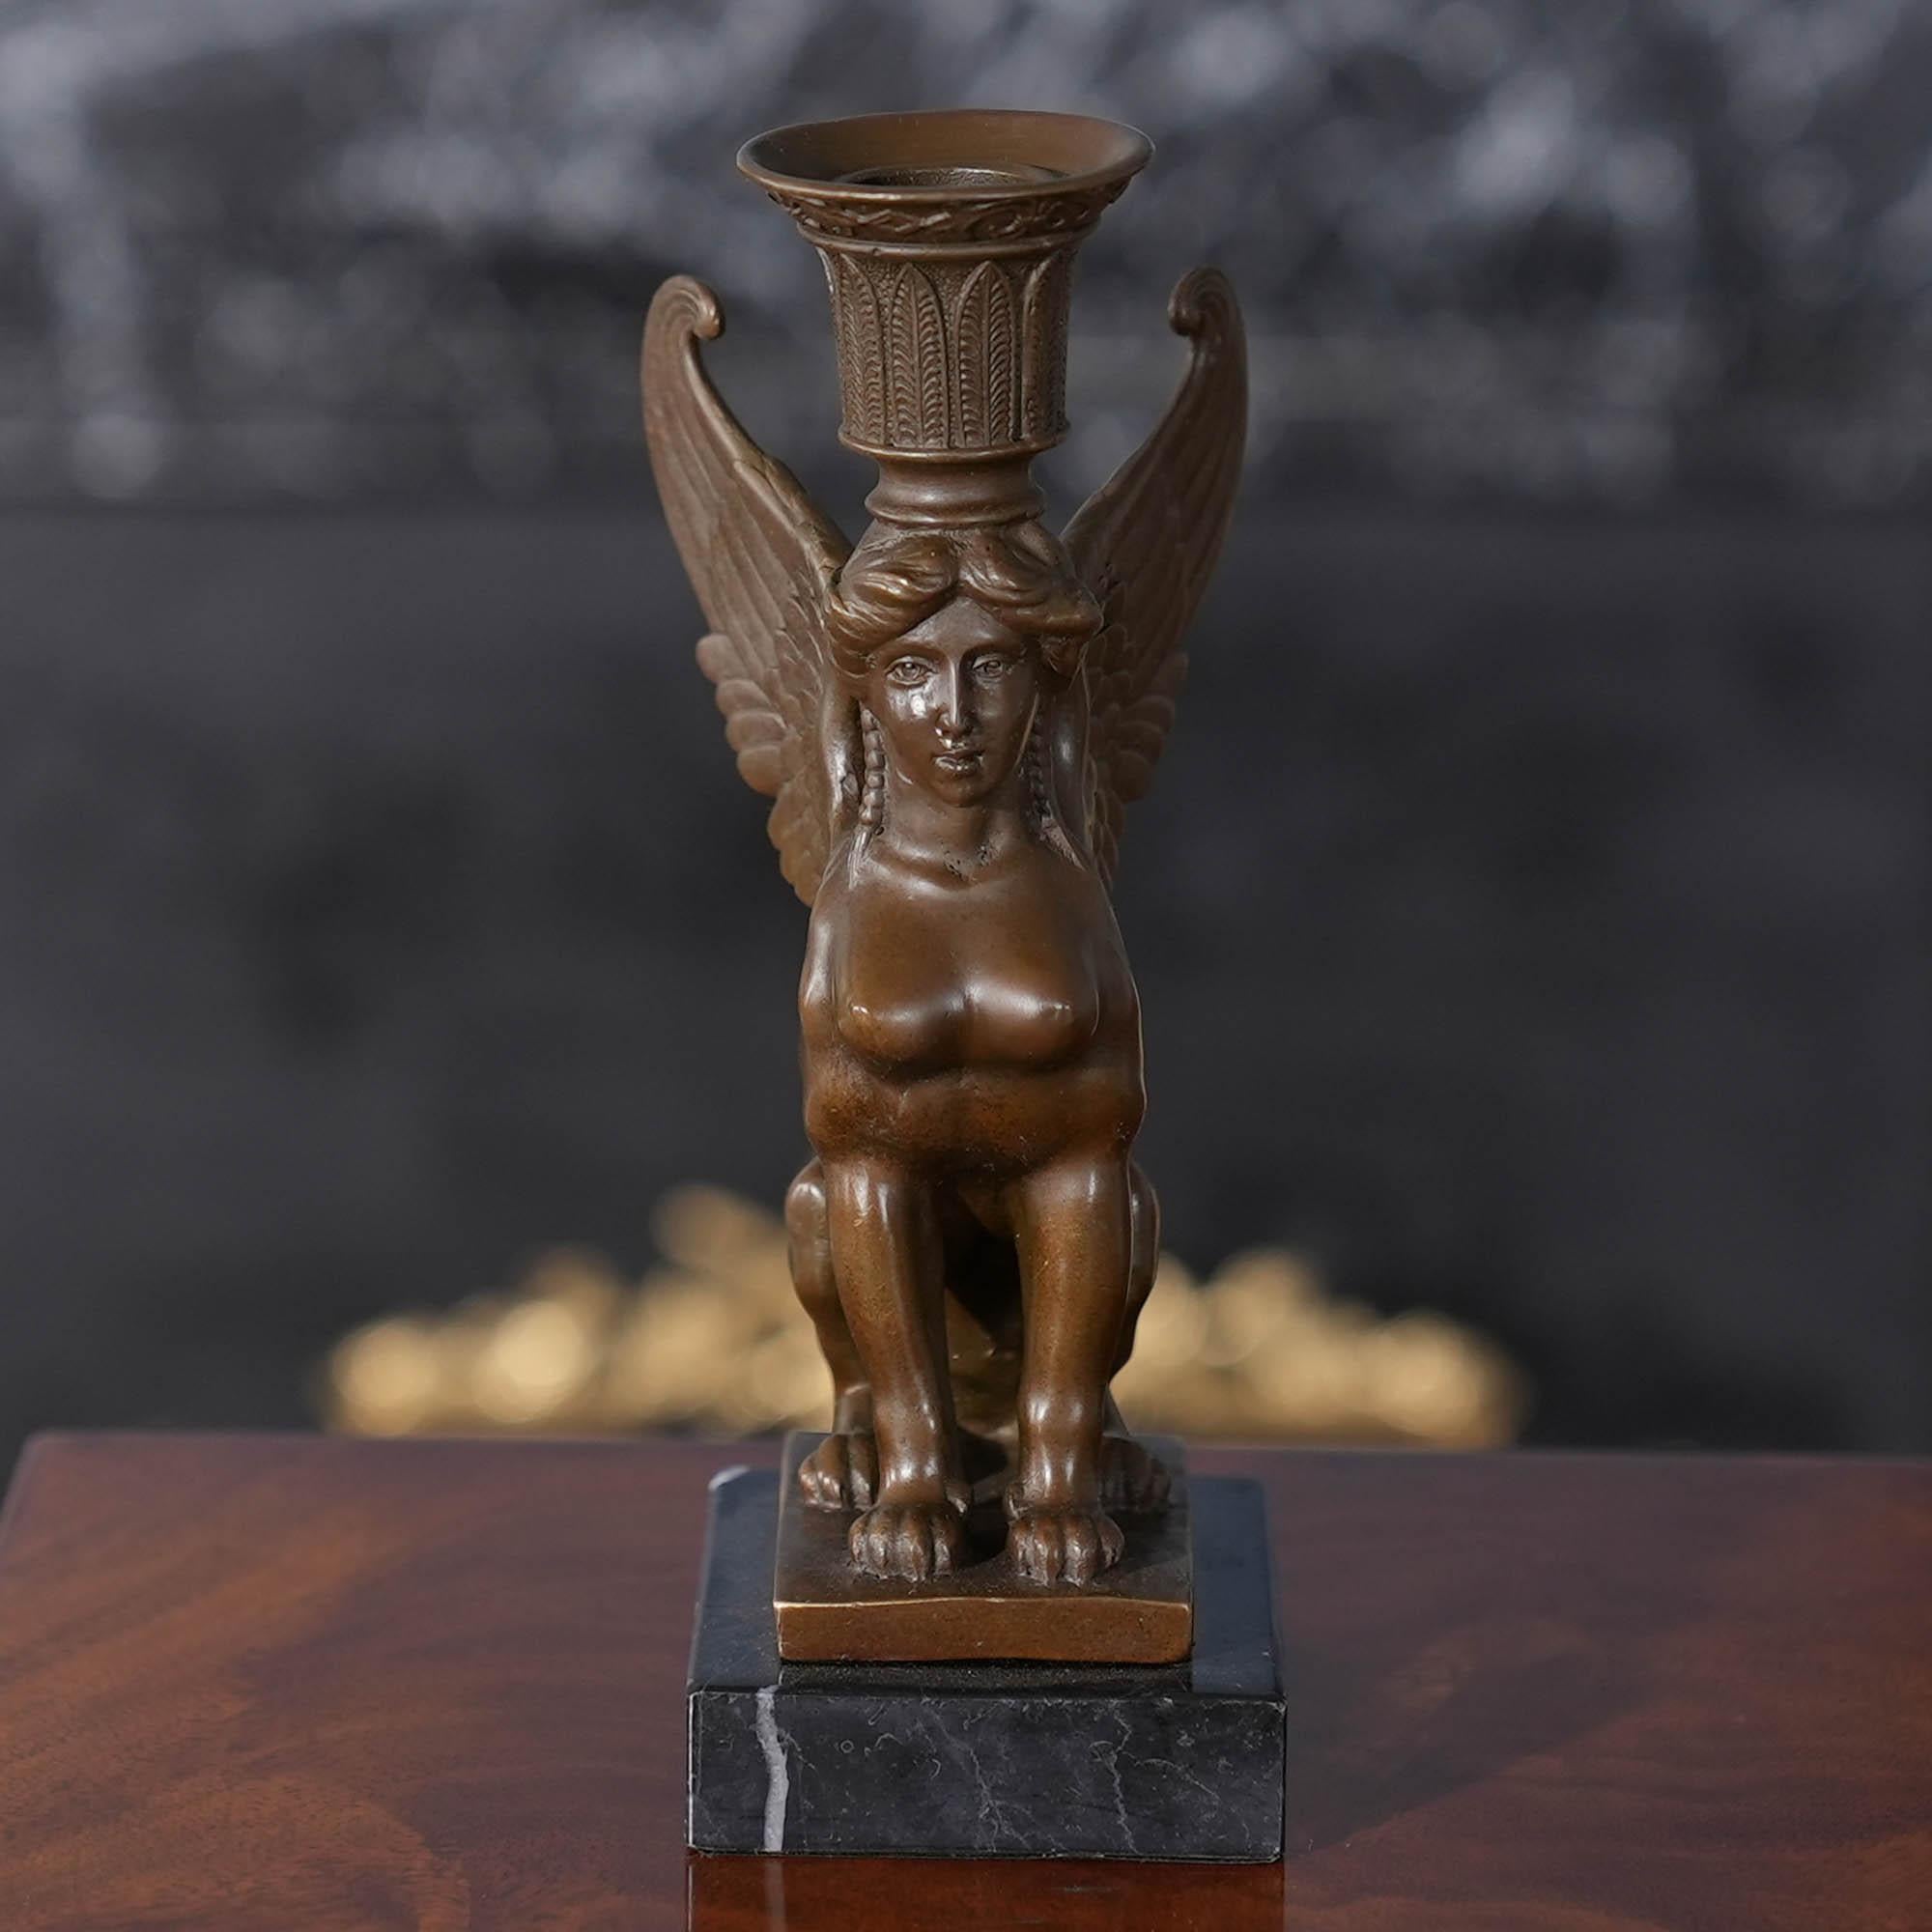 Der Sphinx-Kerzenhalter aus Bronze auf Marmorsockel ist selbst im Stillstand anmutig und stellt eine auffällige Ergänzung für jede Umgebung dar. Die Sphinx-Statue aus Bronze wurde im traditionellen Wachsausschmelzverfahren gegossen und mit